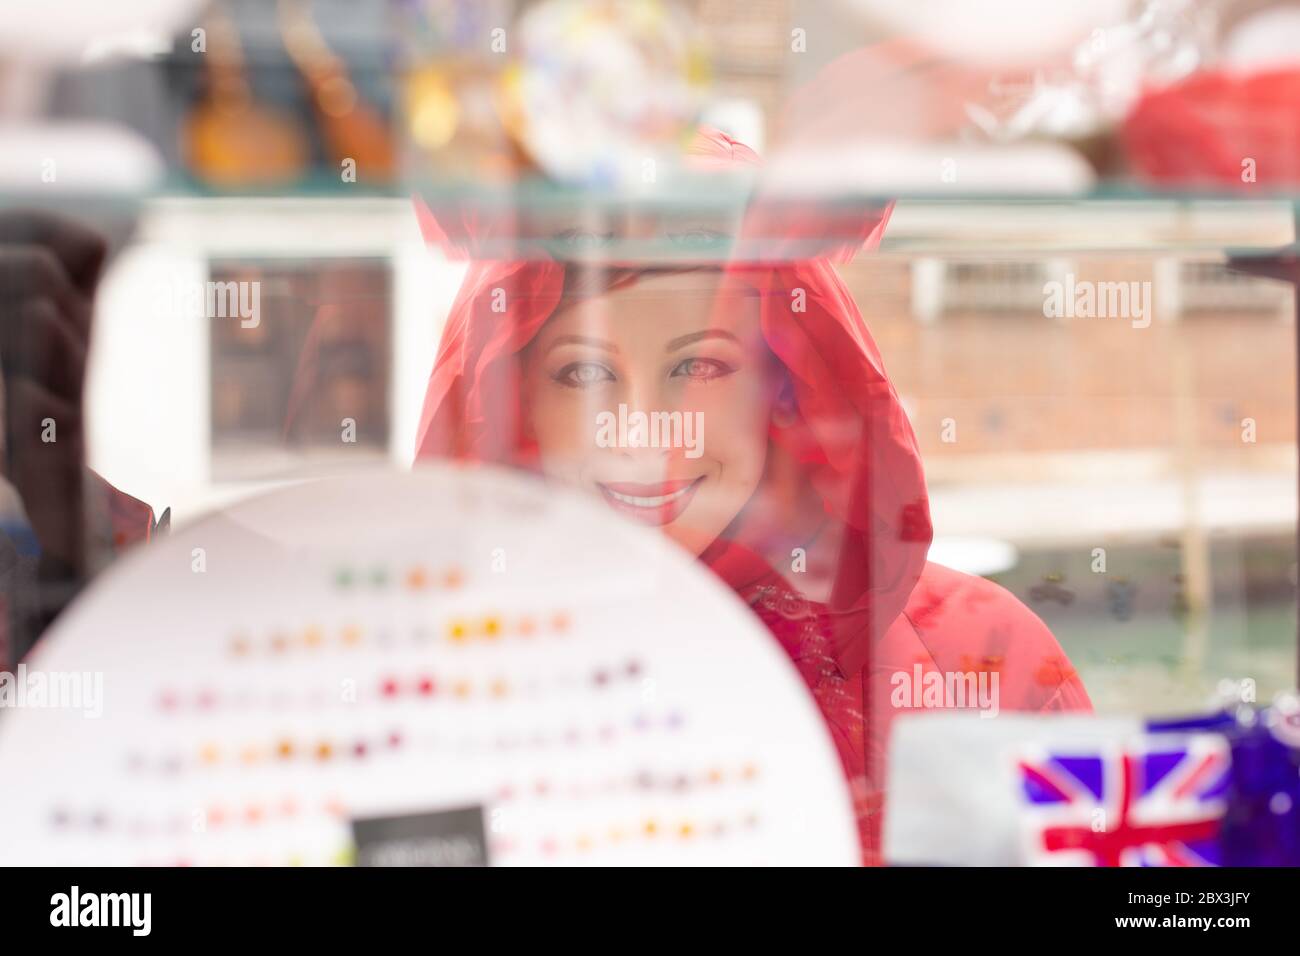 Seite Profil Frau lächelnd auf Bijouterie im Schaufenster in Italien auf der Insel Murano. Dame in rot Winter Mantel Kleidung redhead Haare stehen auf Stockfoto